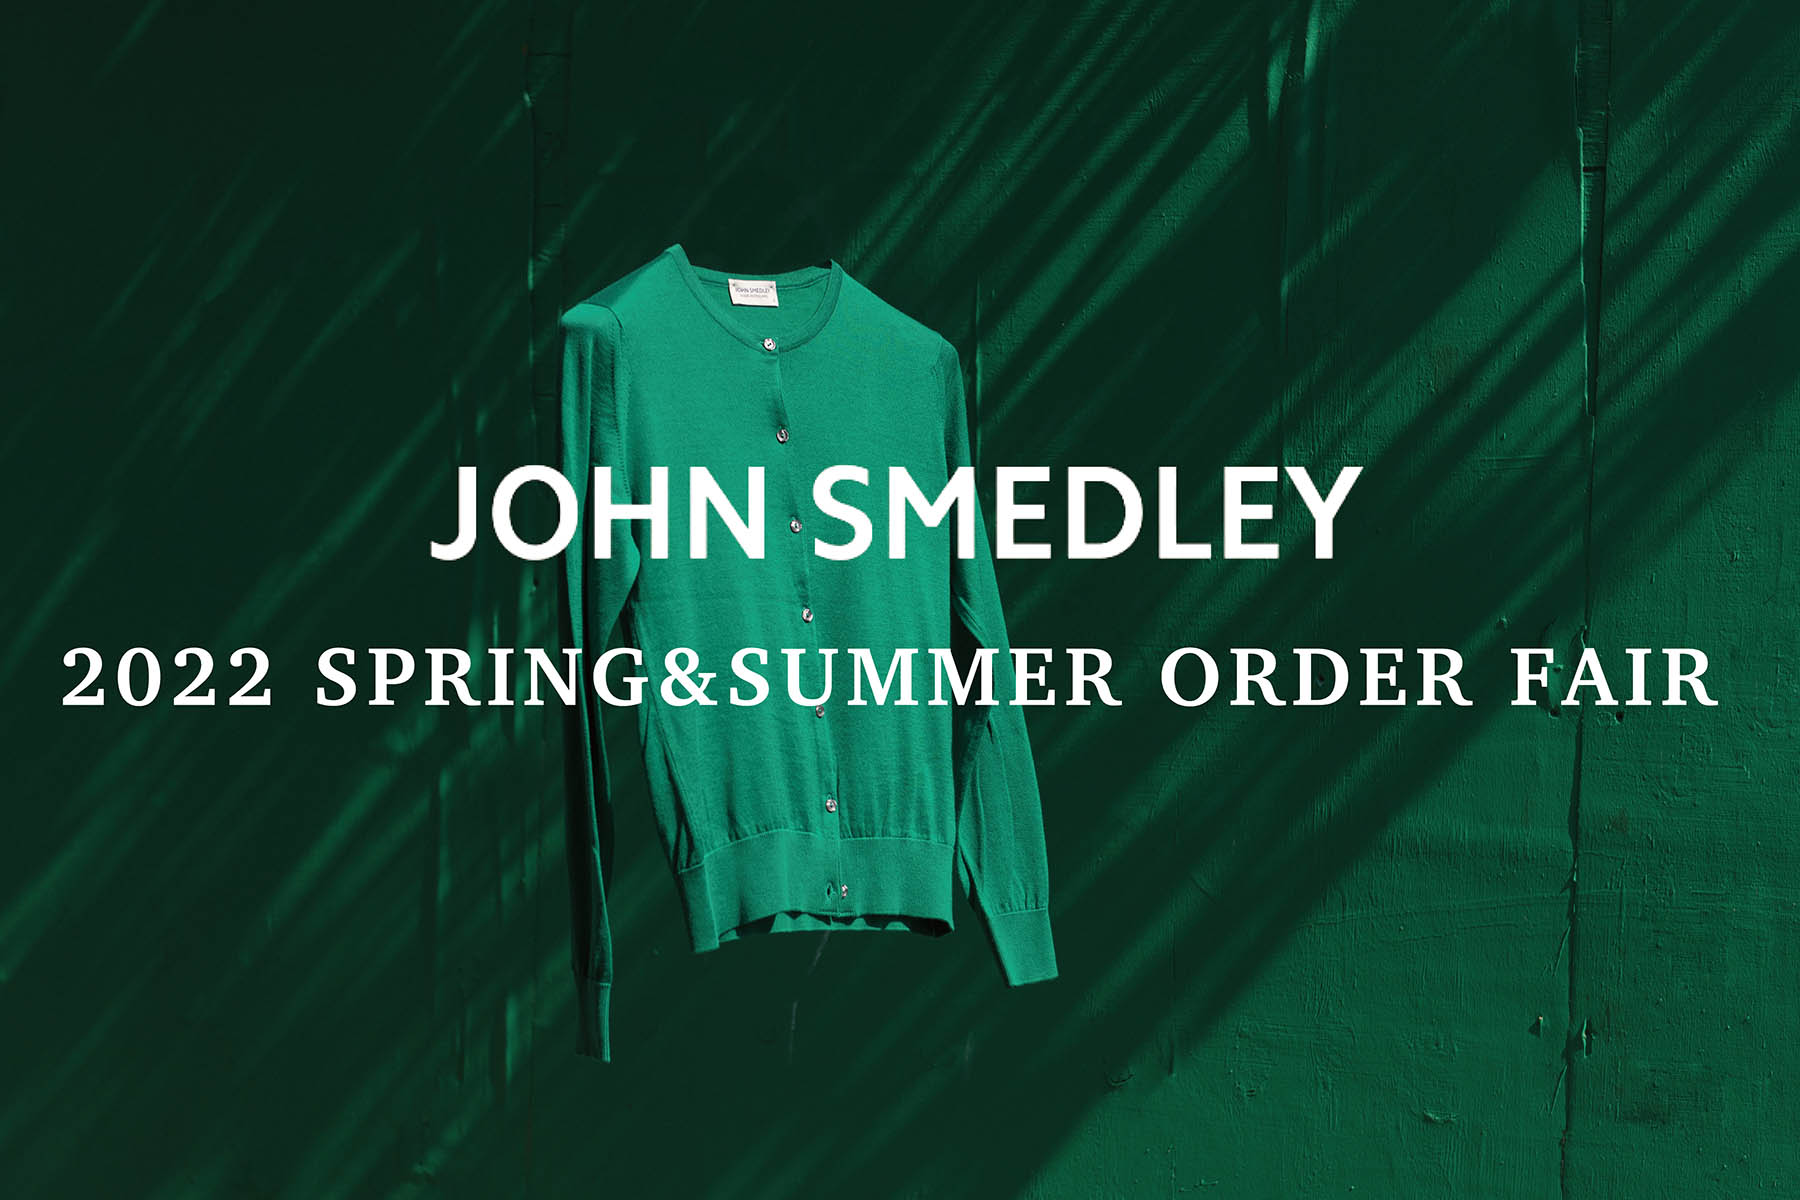 2022 SPRING&SUMMER JOHN SMEDLEY ORDER FAIR